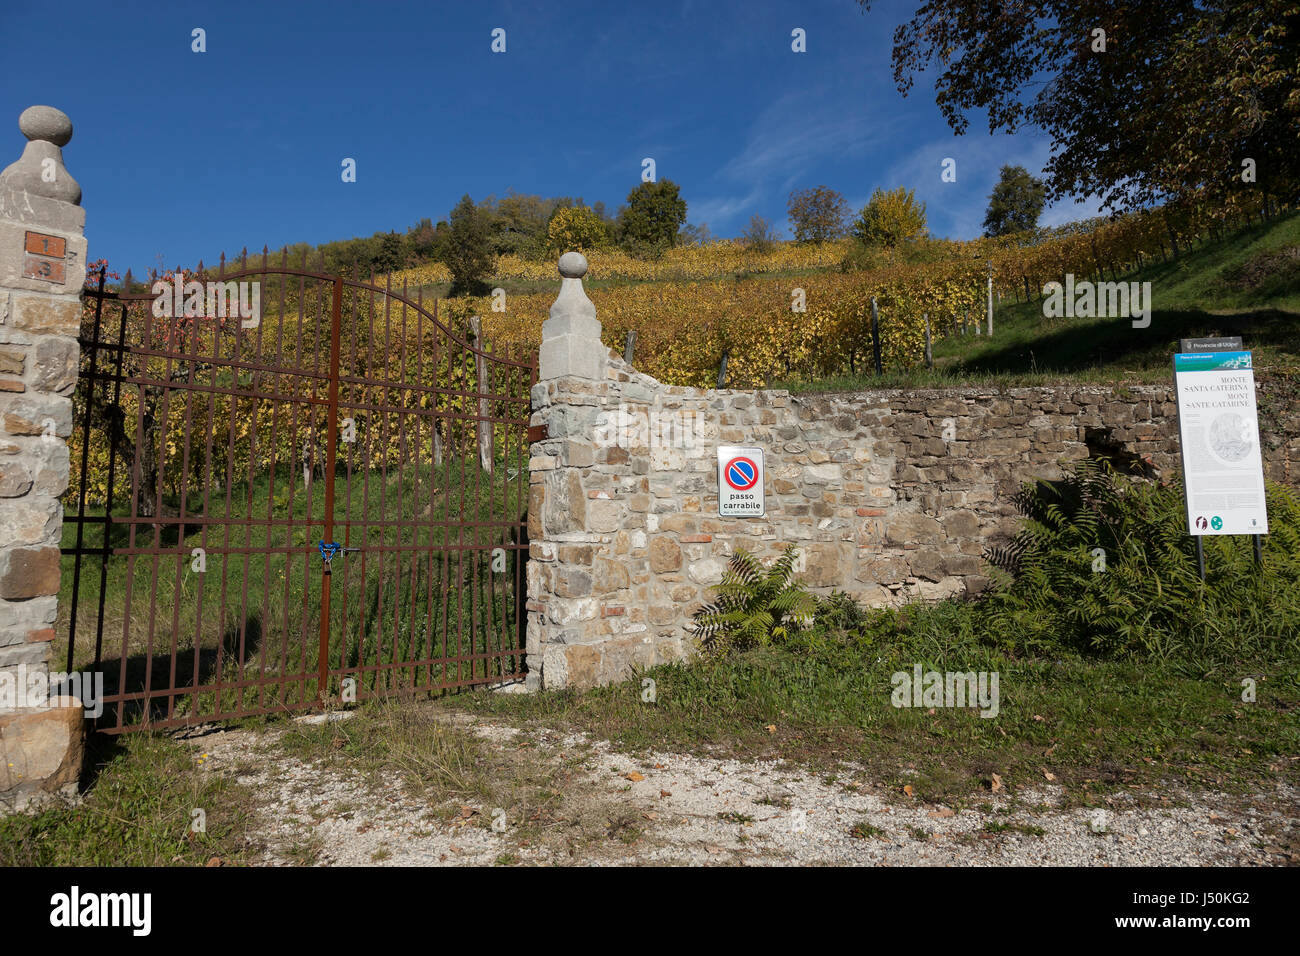 Stone wall with iron gate at Corno di Rosazzo, Friuli, Italy Stock Photo